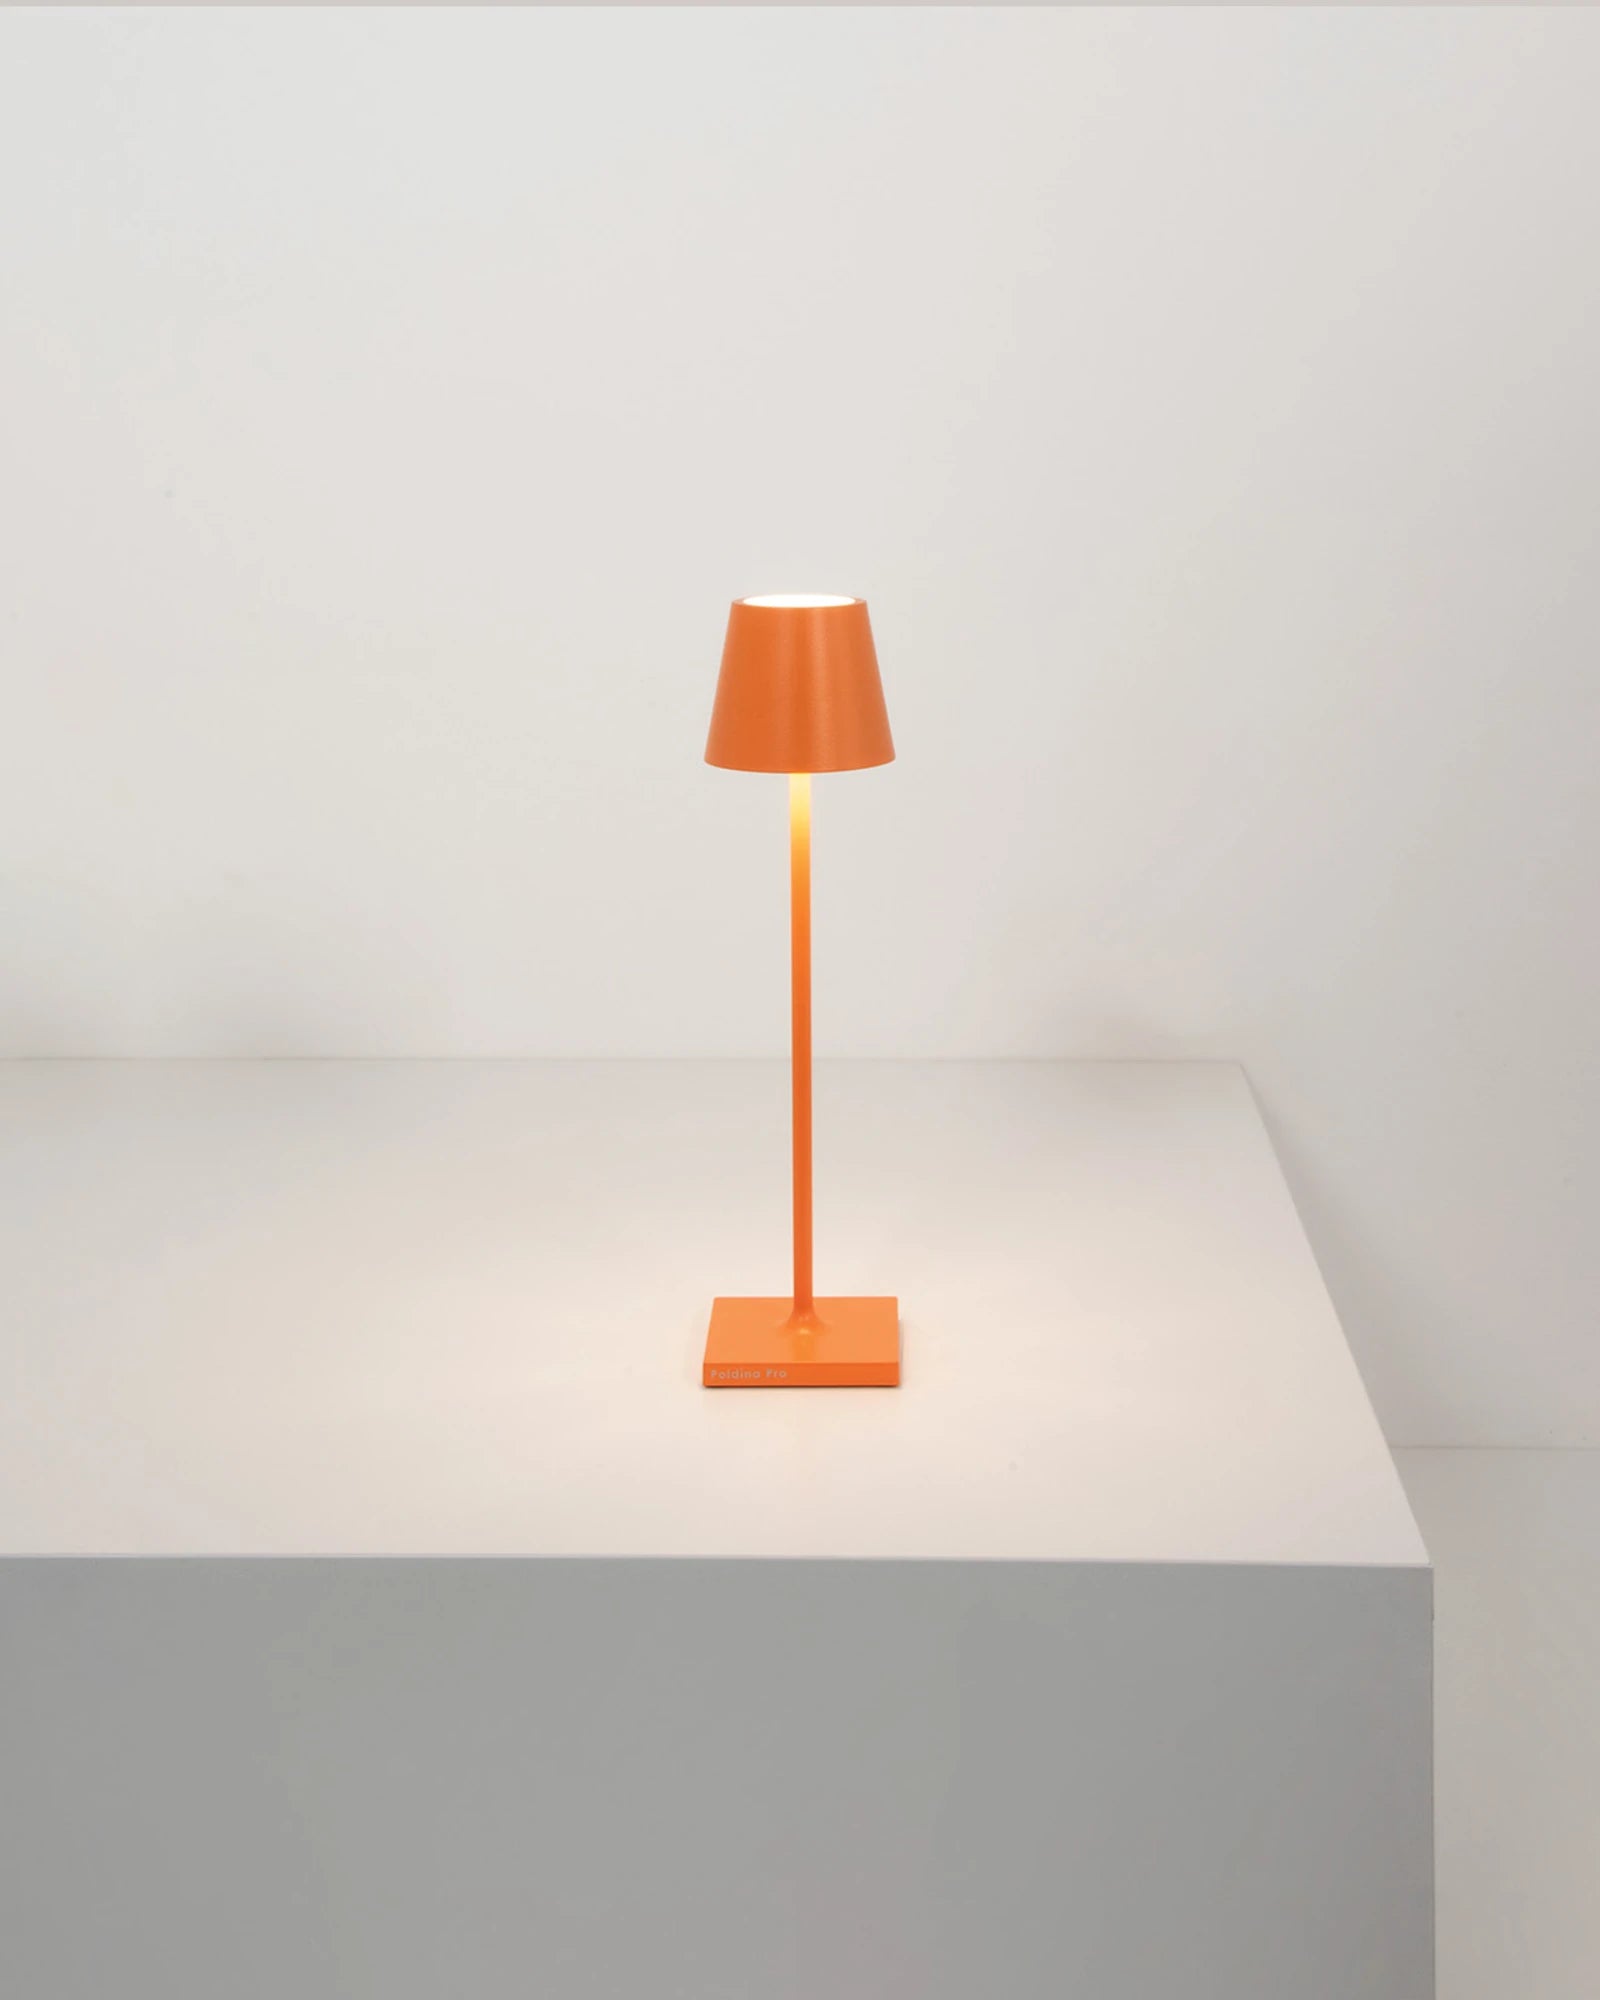 Poldina Micro Table Lamp